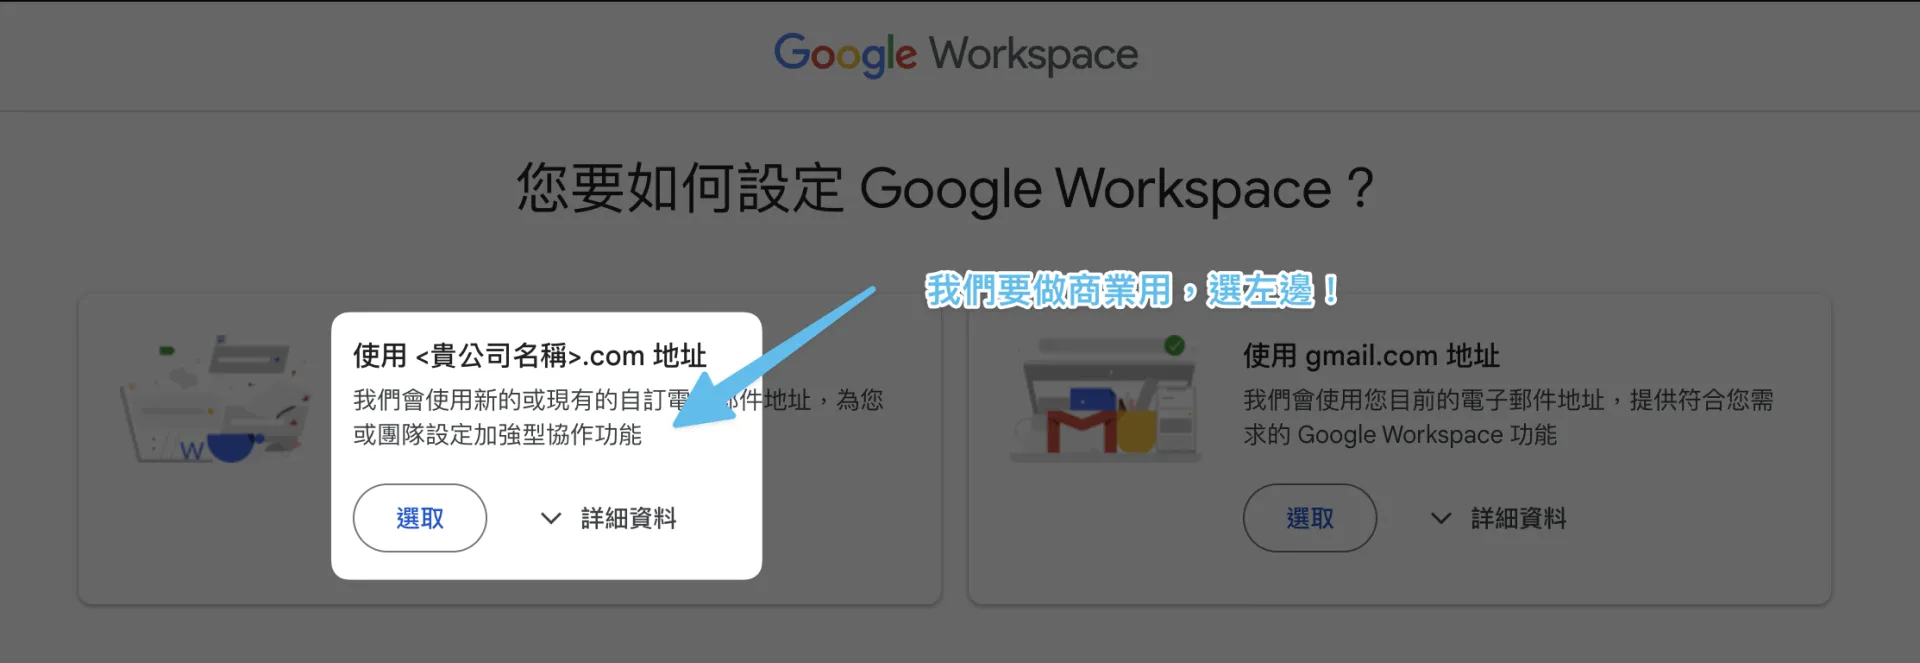 Google Workspace 05